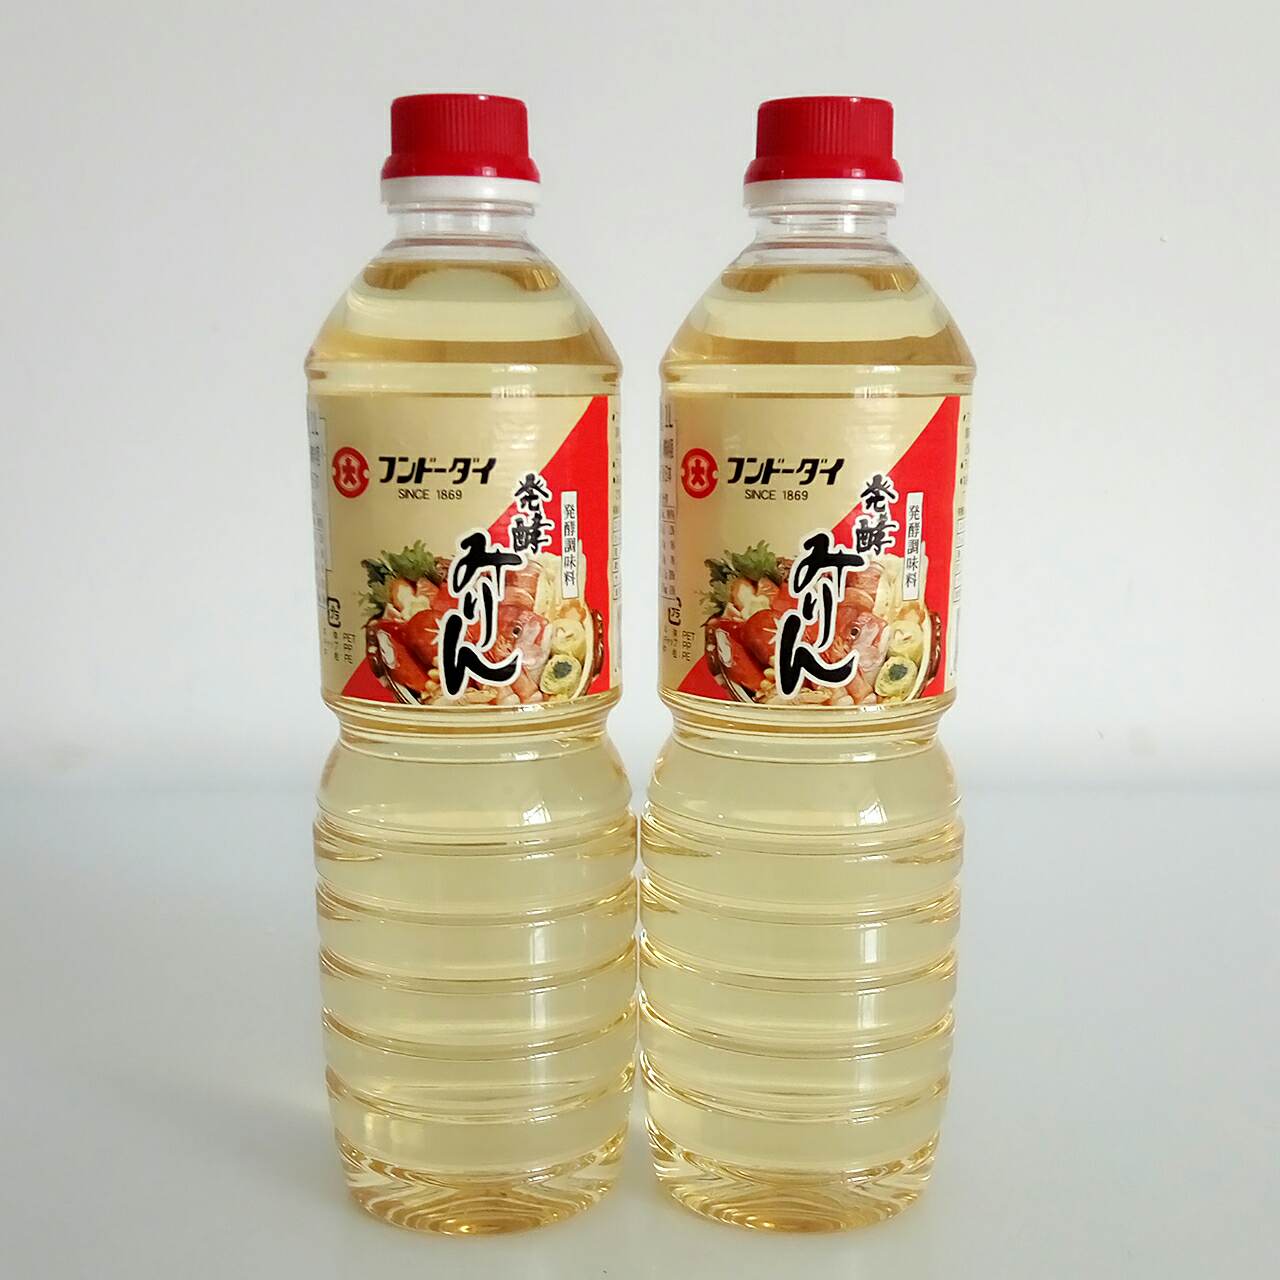 【发酵料酒 味淋】产地：日本 58.5元/瓶